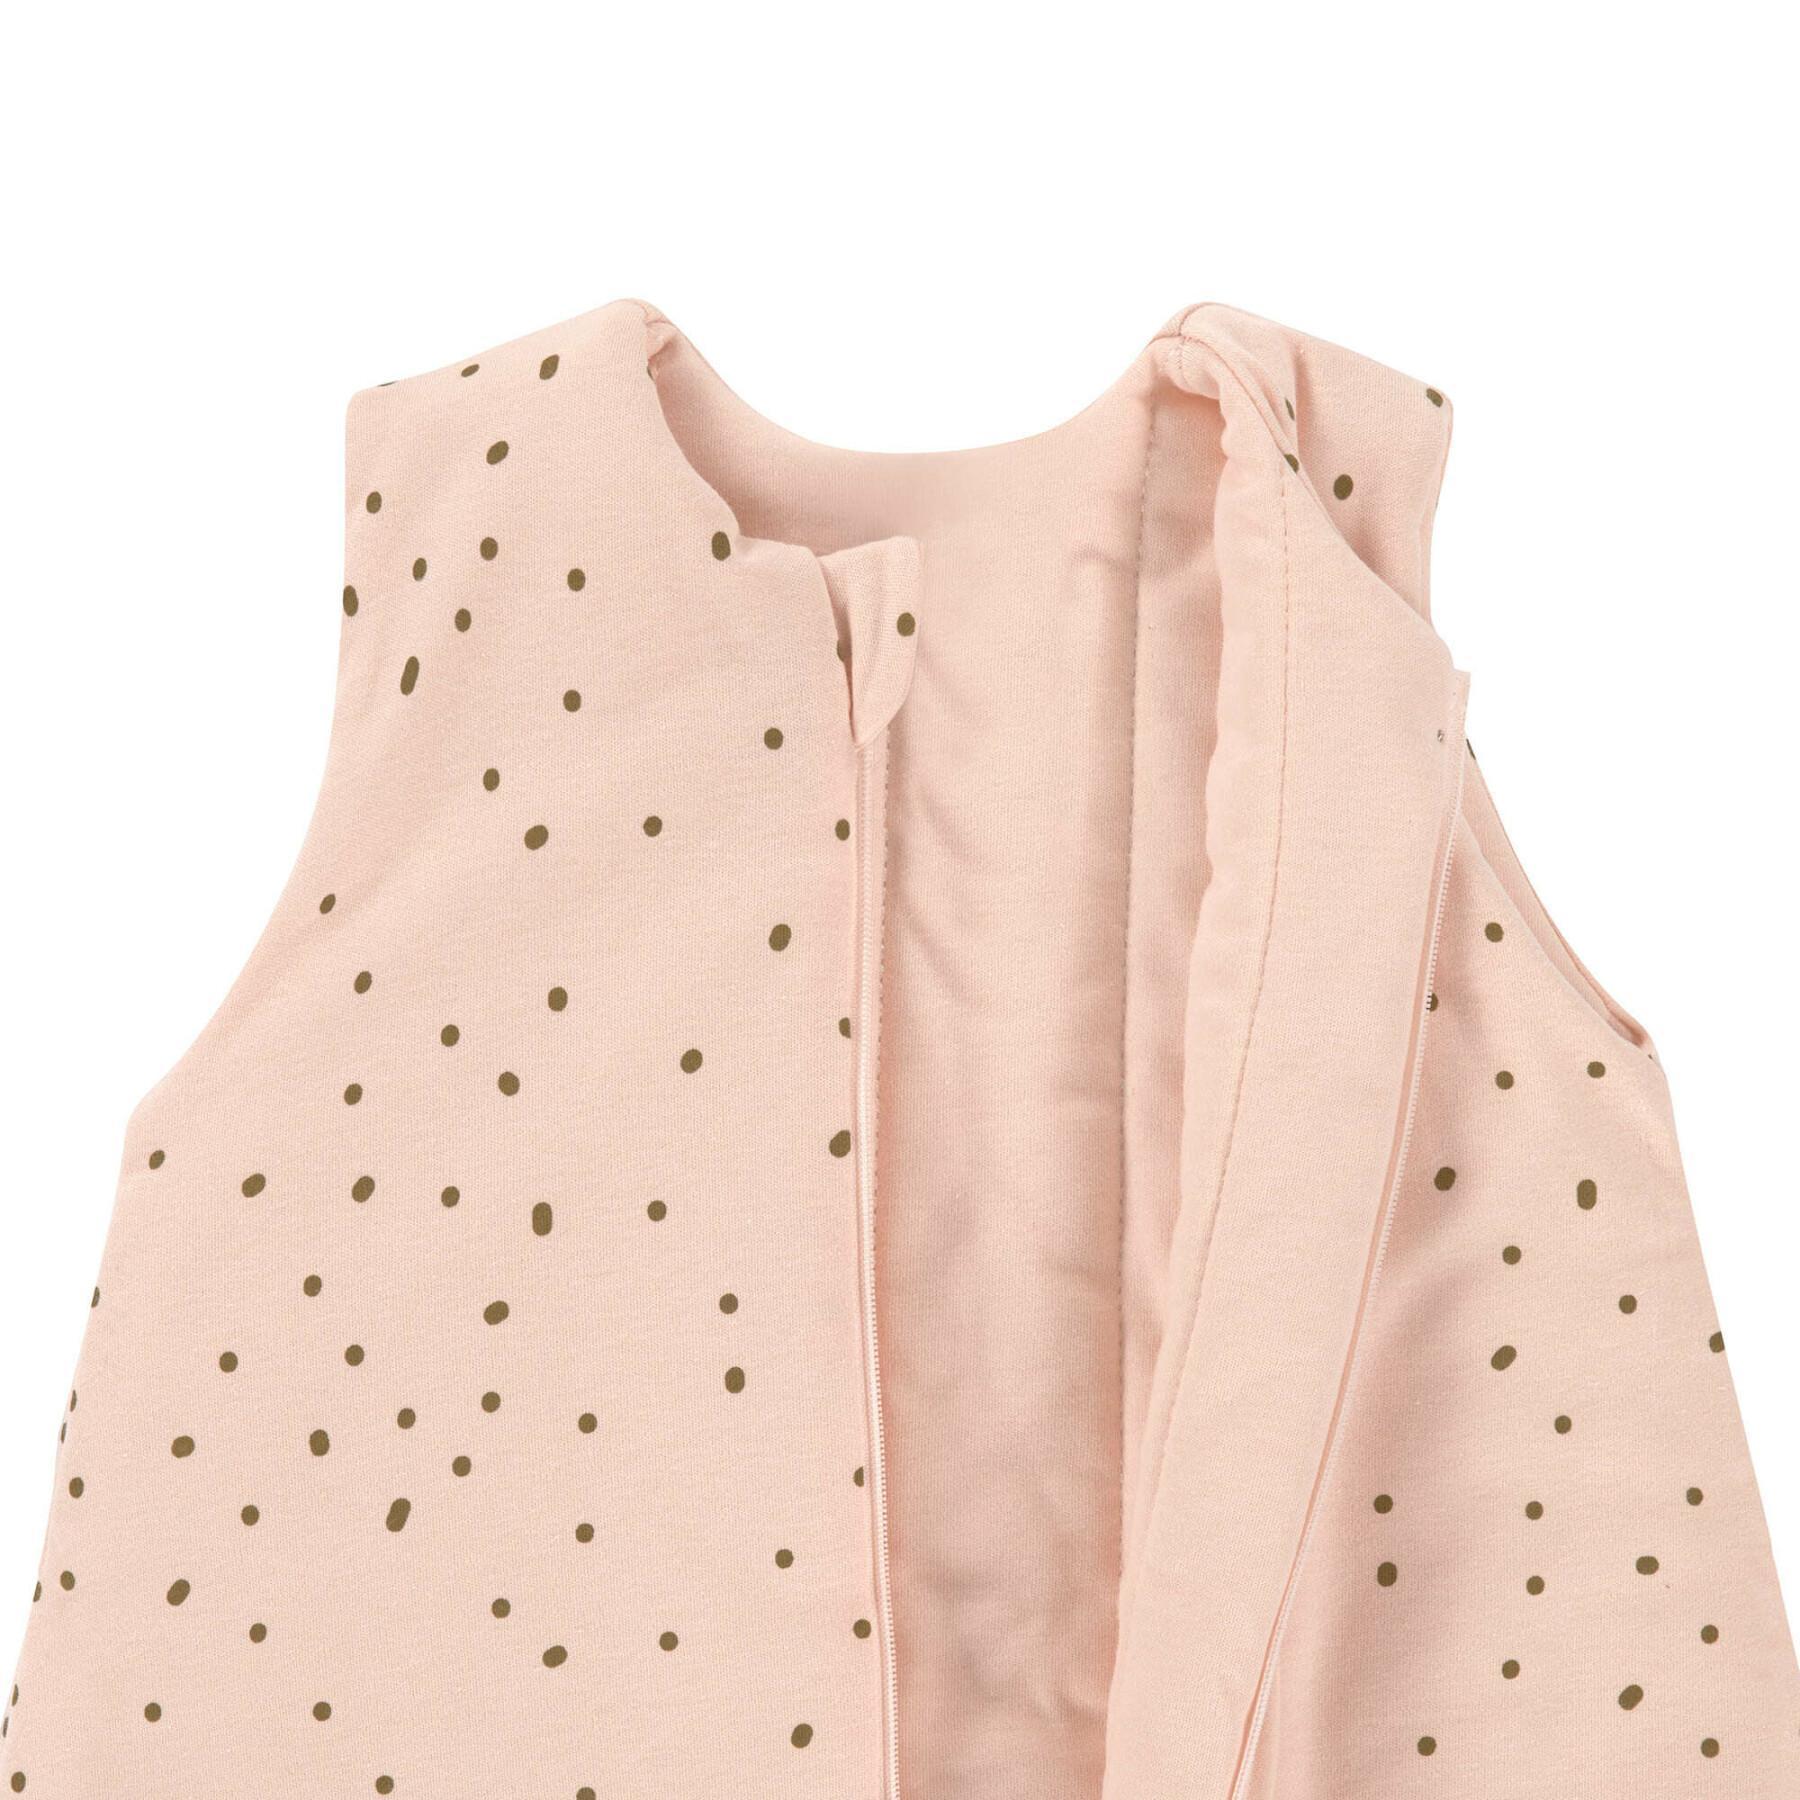 Pyjamapakje voor baby's Lässig Dots